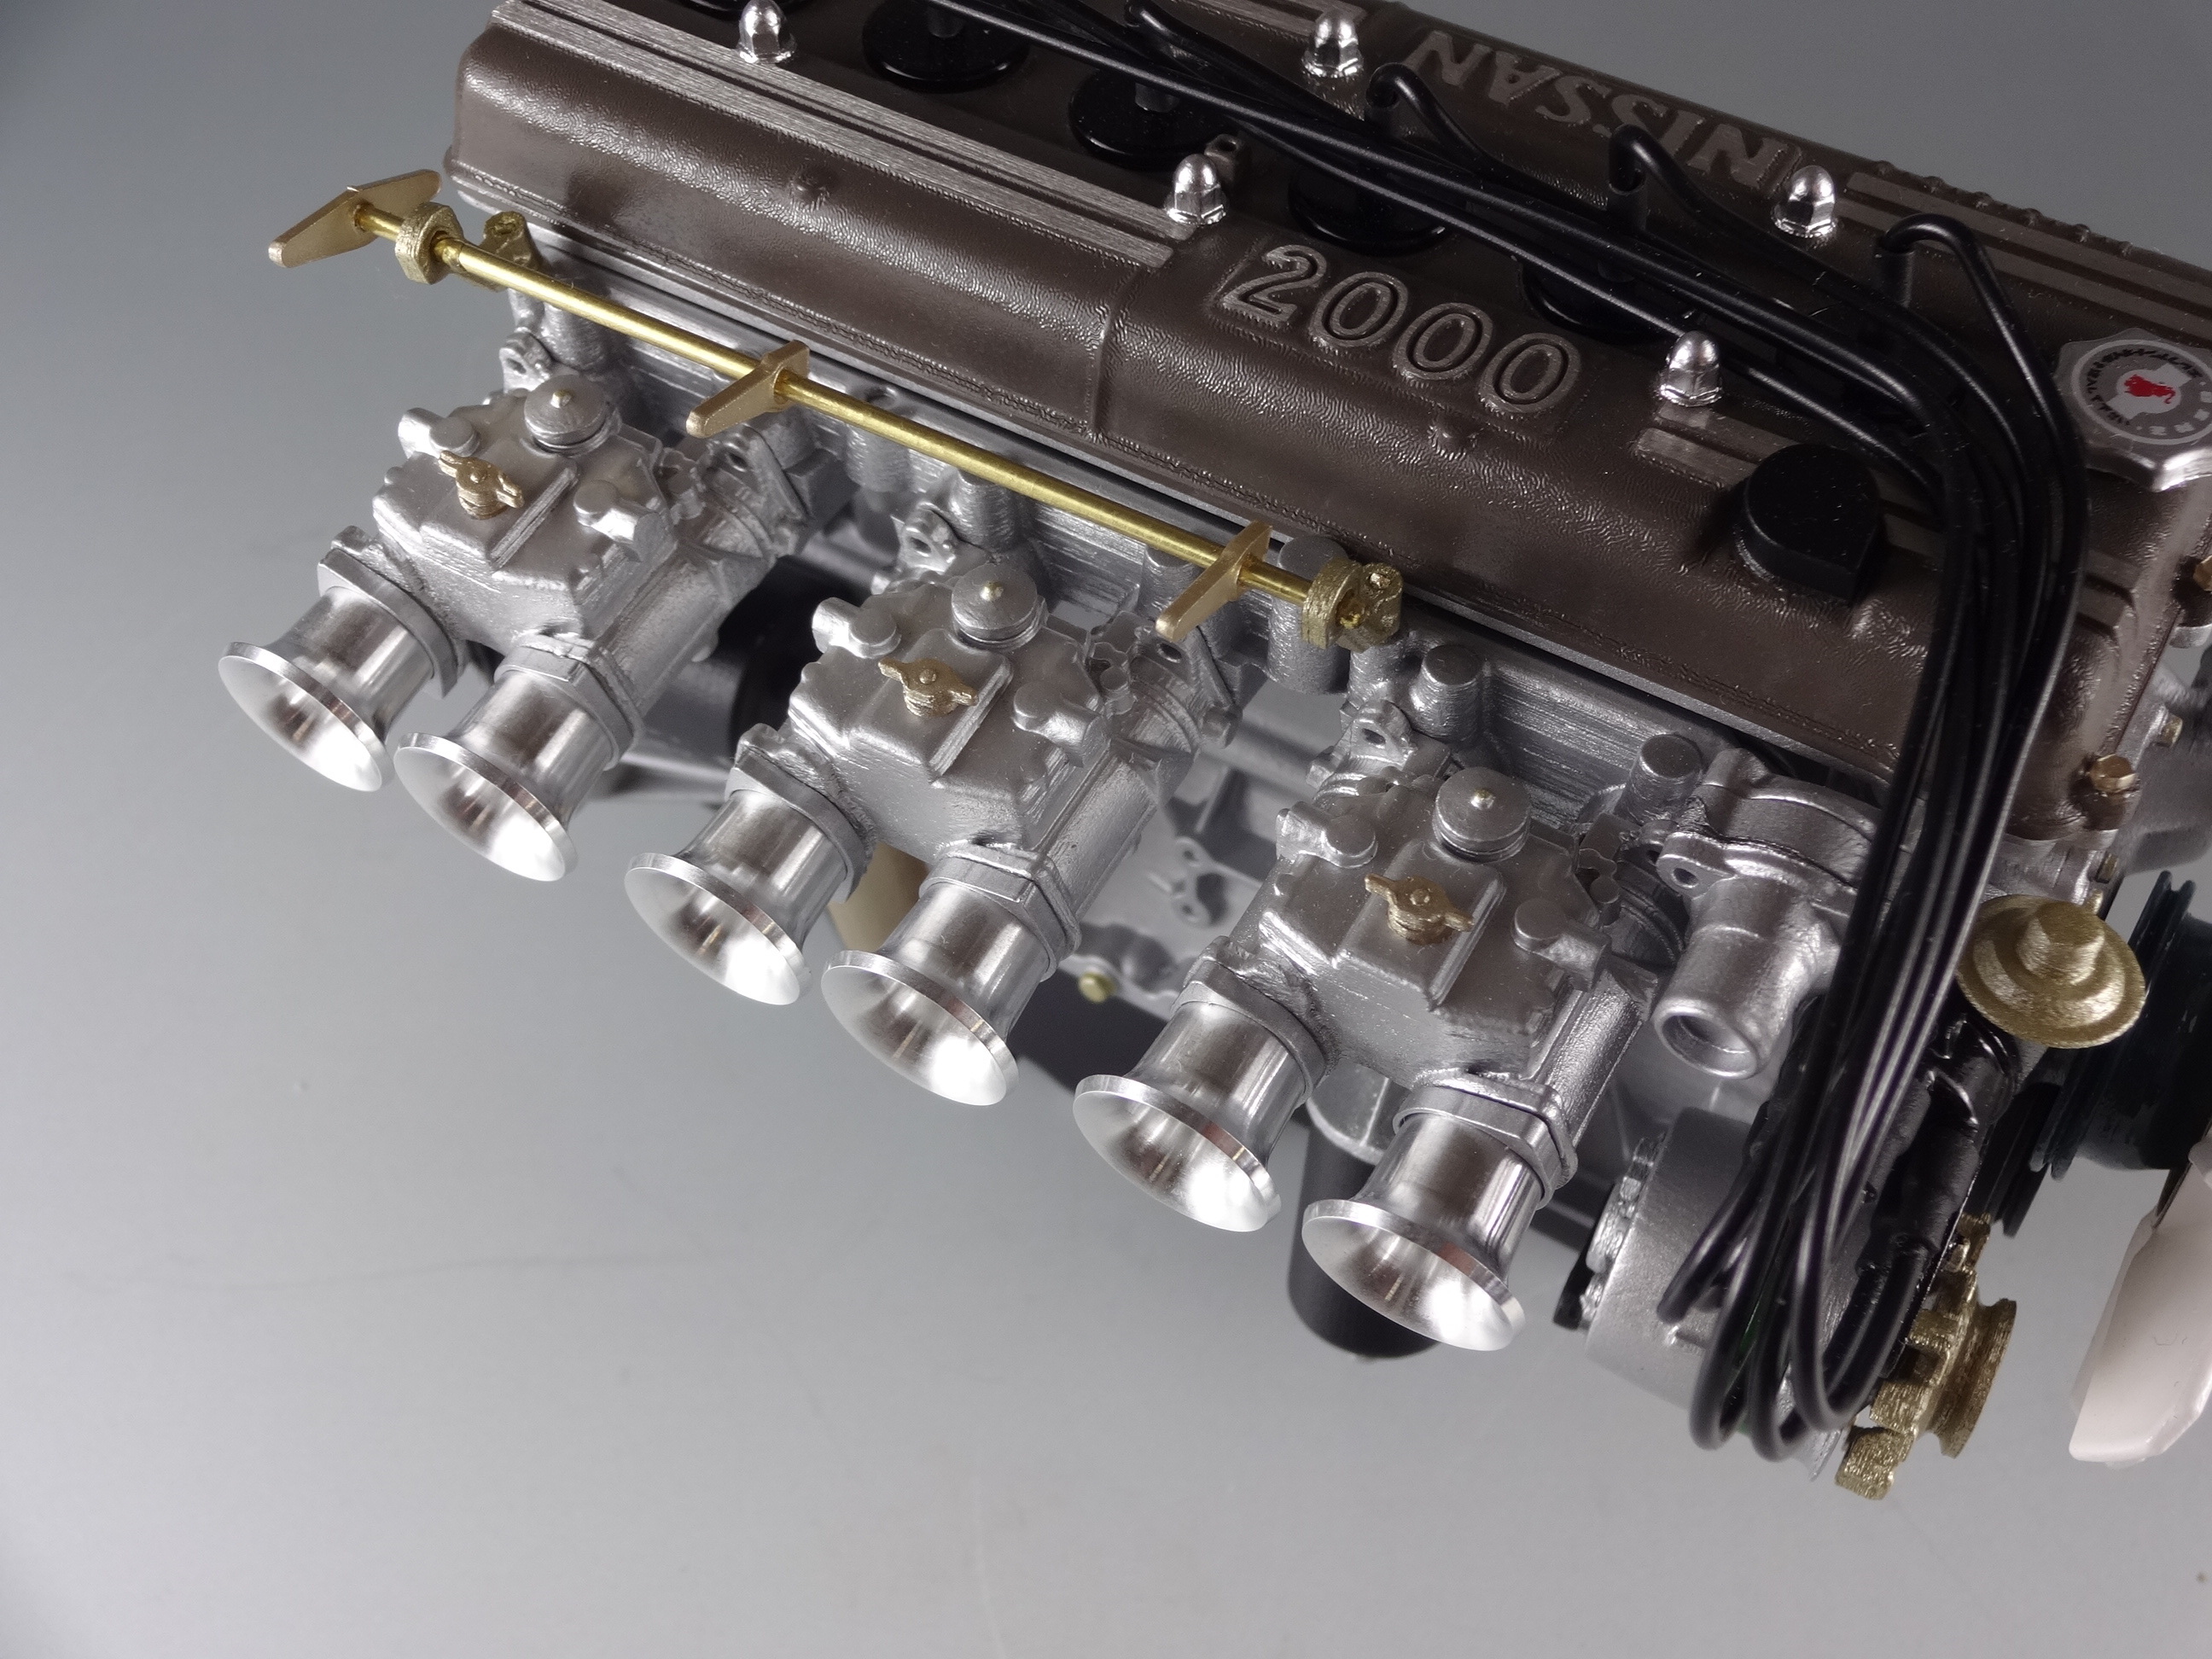 スカイラインの4気筒dohc Fjet が1 6サイズで登場 3dプリンターで細部まで精密再現したエンジン モデル 日下エンジニアリング株式会社のプレスリリース